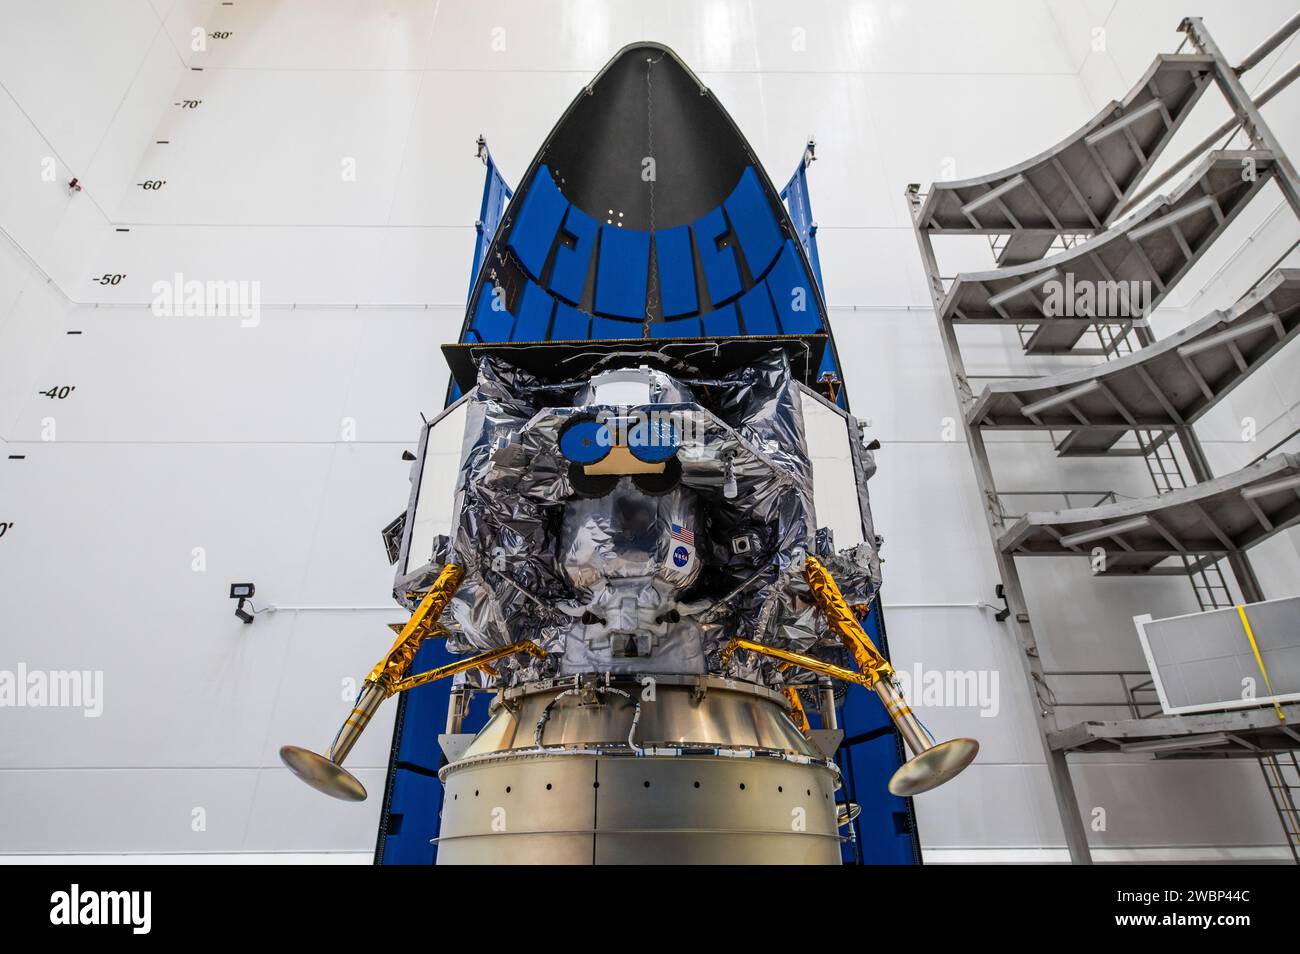 Vor dem Start im Rahmen der Commercial Lunar Payload Services (CLPS)-Initiative der NASA ist das Mondlandegerät Peregrine von Astrobotic am 21. November 2023 in der Astrotech Space Operations Facility in der Nähe des Kennedy Space Center in Florida in der Nutzlastverkleidung (Nasenkegel) der Vulcan Rakete der United Launch Alliance eingekapselt. Der Start der Peregrine Mission One von Astrobotic wird die NASA und kommerzielle Nutzlasten Anfang 2024 zum Mond bringen, um die Mondexosphäre, die thermischen Eigenschaften und die Wasserstoffreichweite des Mondregolithen, Magnetfelder und die Strahlungsumgebung der Mondsurfa zu untersuchen Stockfoto